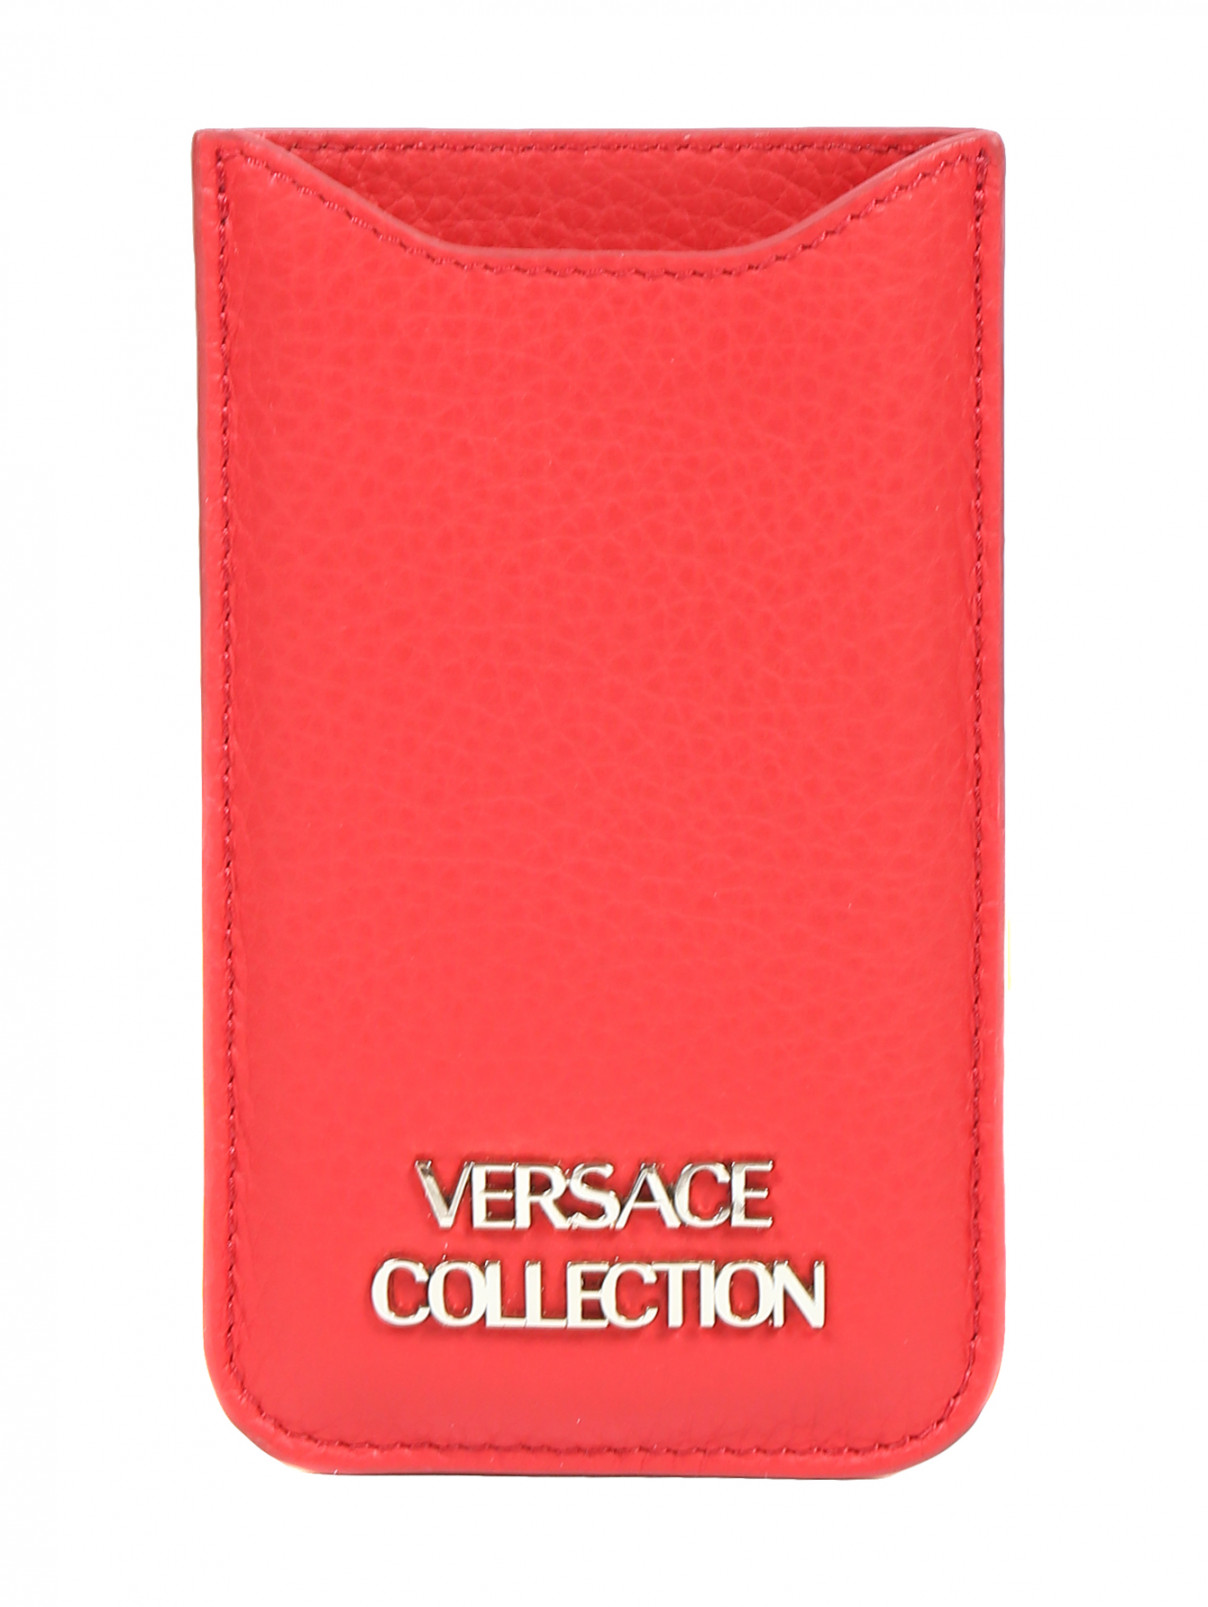 Чехол из кожи для iPhone 5 Versace Collection  –  Общий вид  – Цвет:  Красный